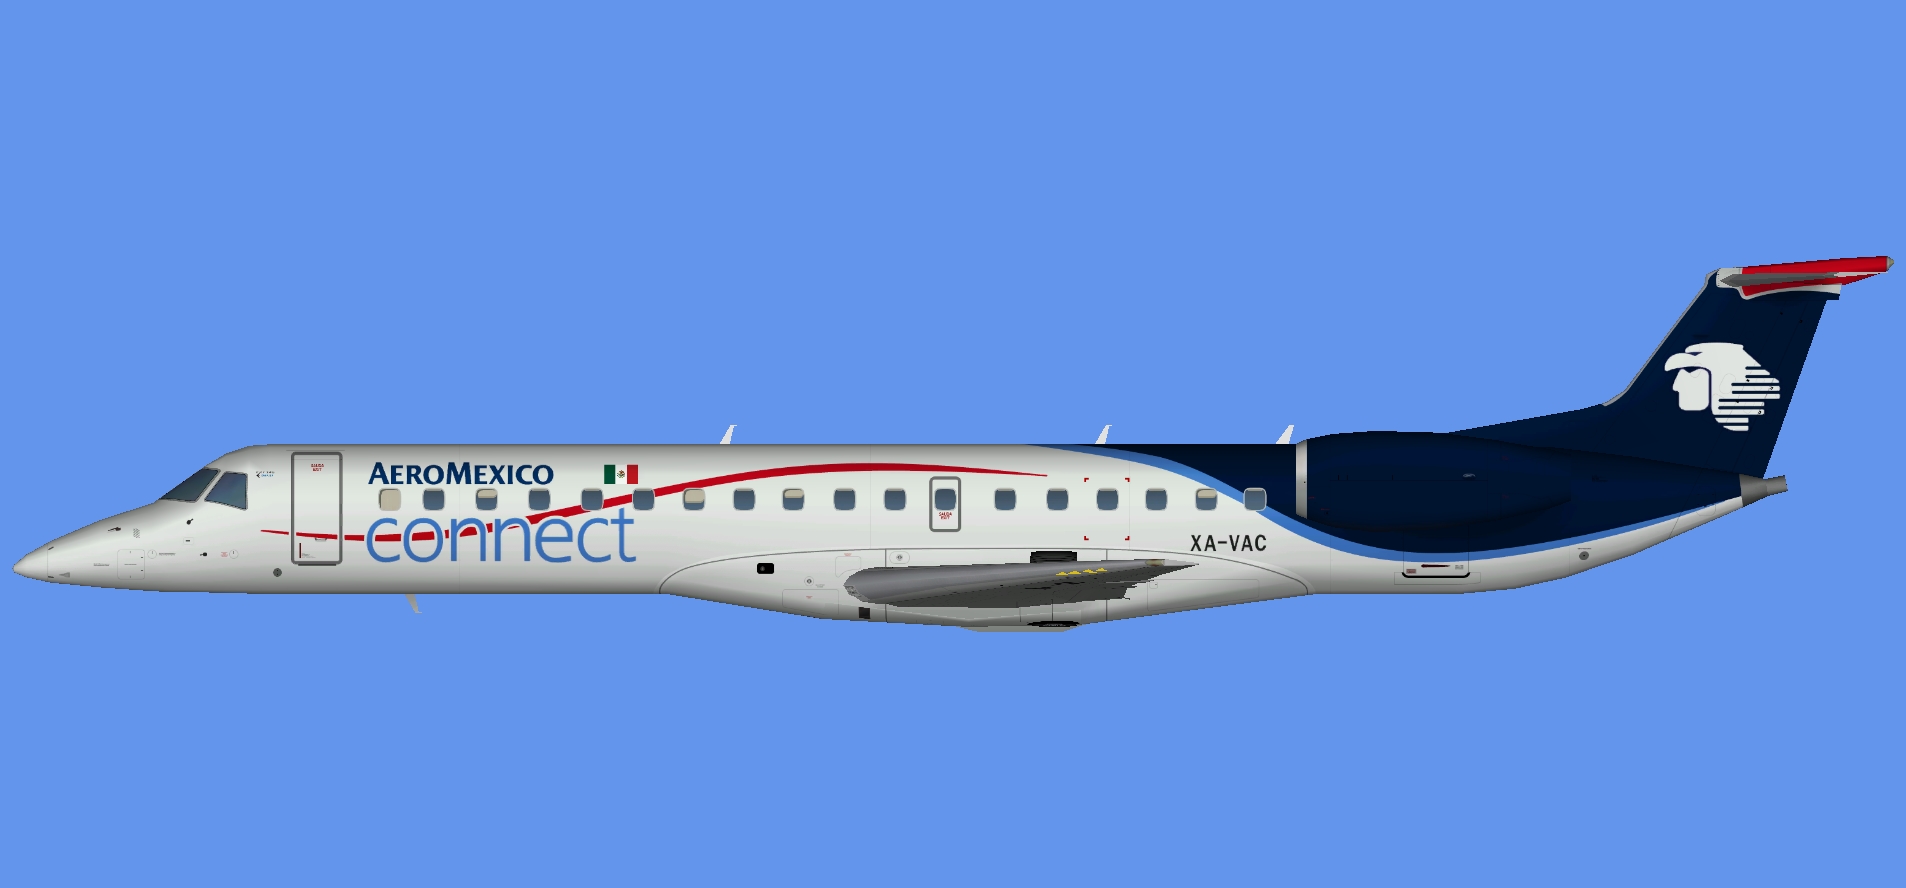 Aeromexico Connect Embraer E-145